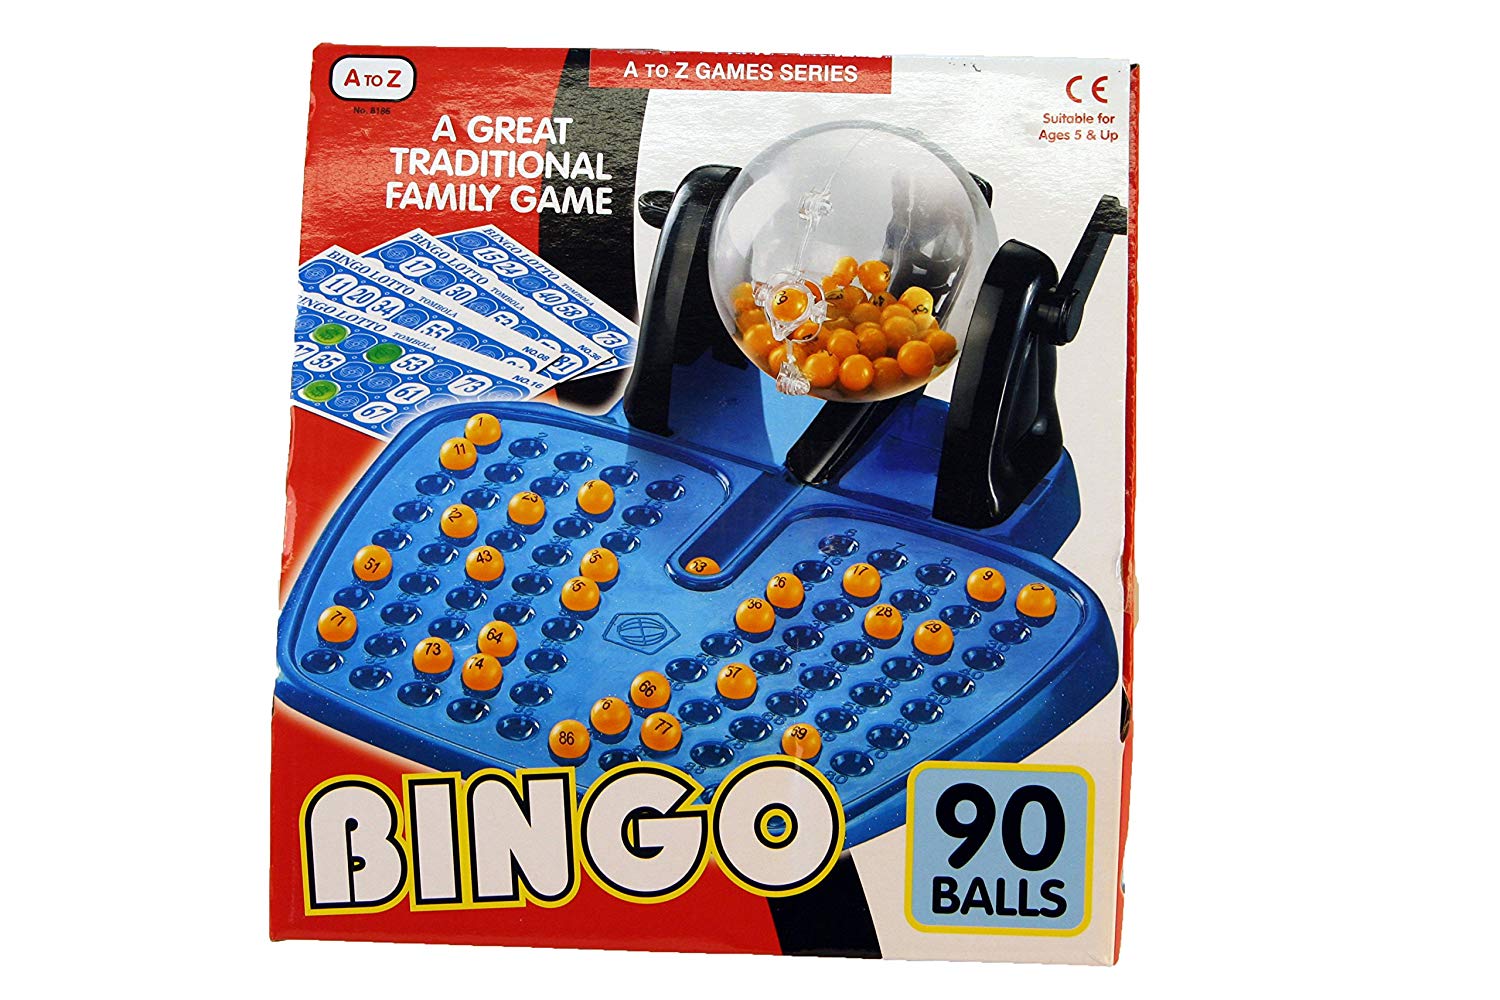 jogar bingo com bônus de registro